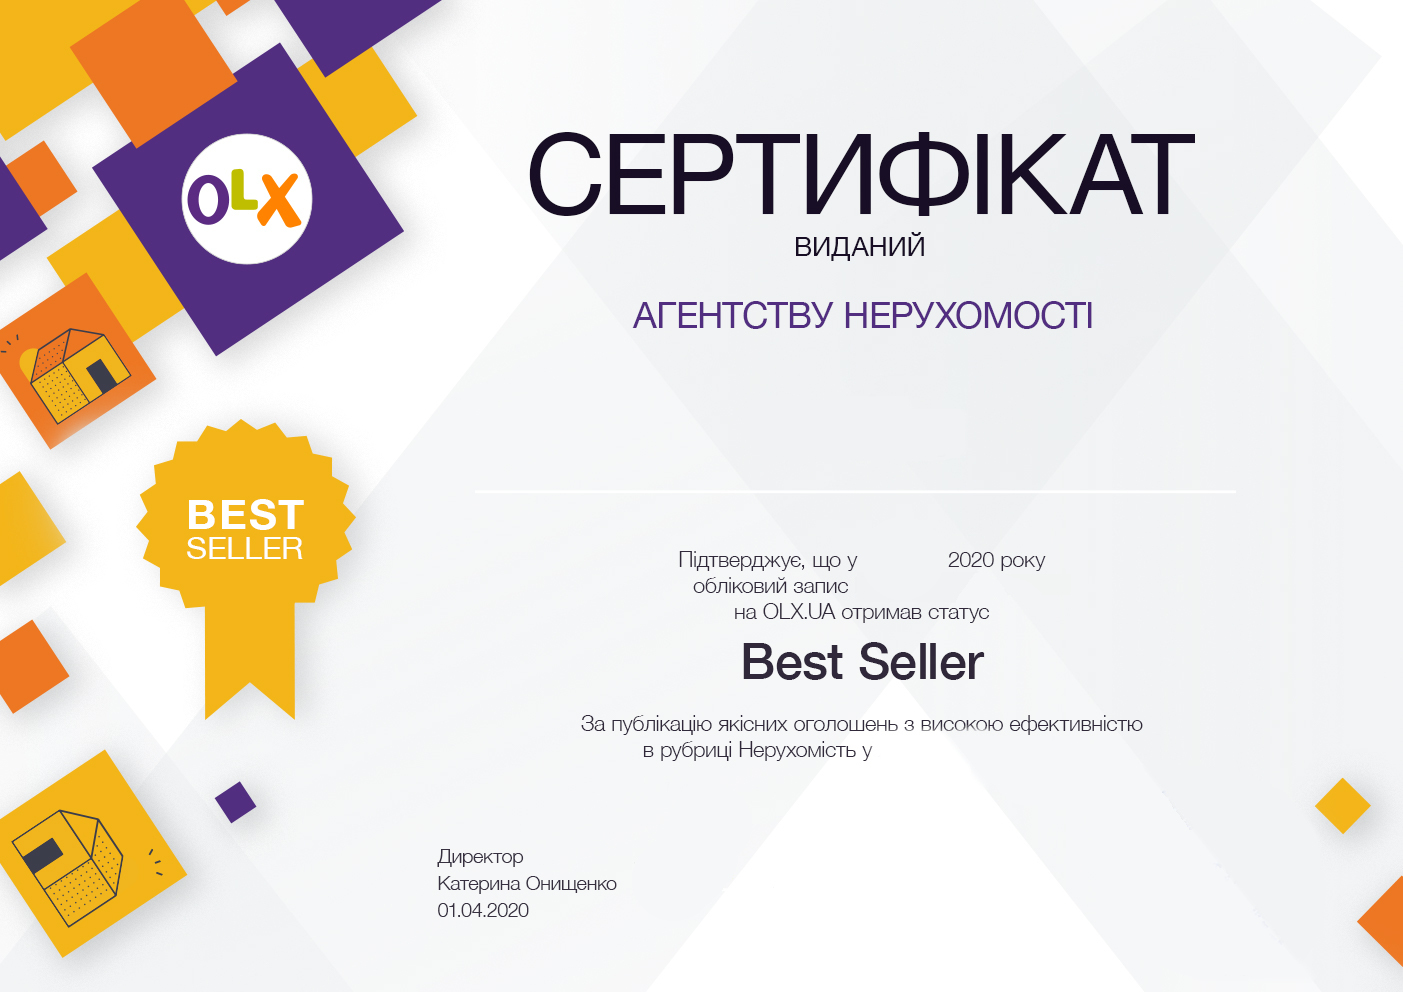 Сертифікат Best Seller OLX